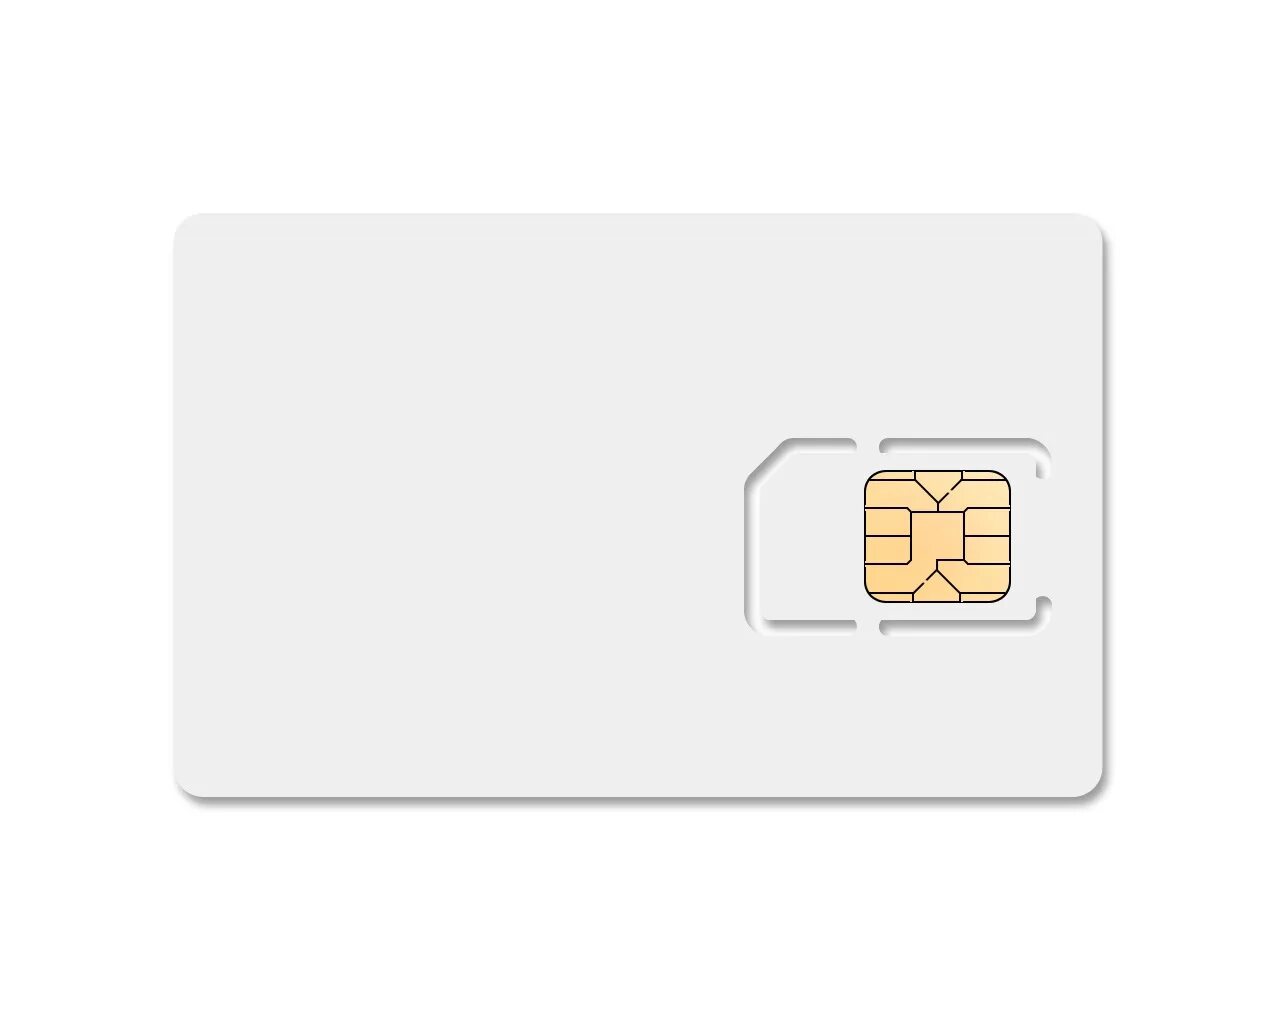 Приостановили сим карту. М2м термо SIM-карта. Чип сим карты. Номер SIM карты. Белая сим карта.